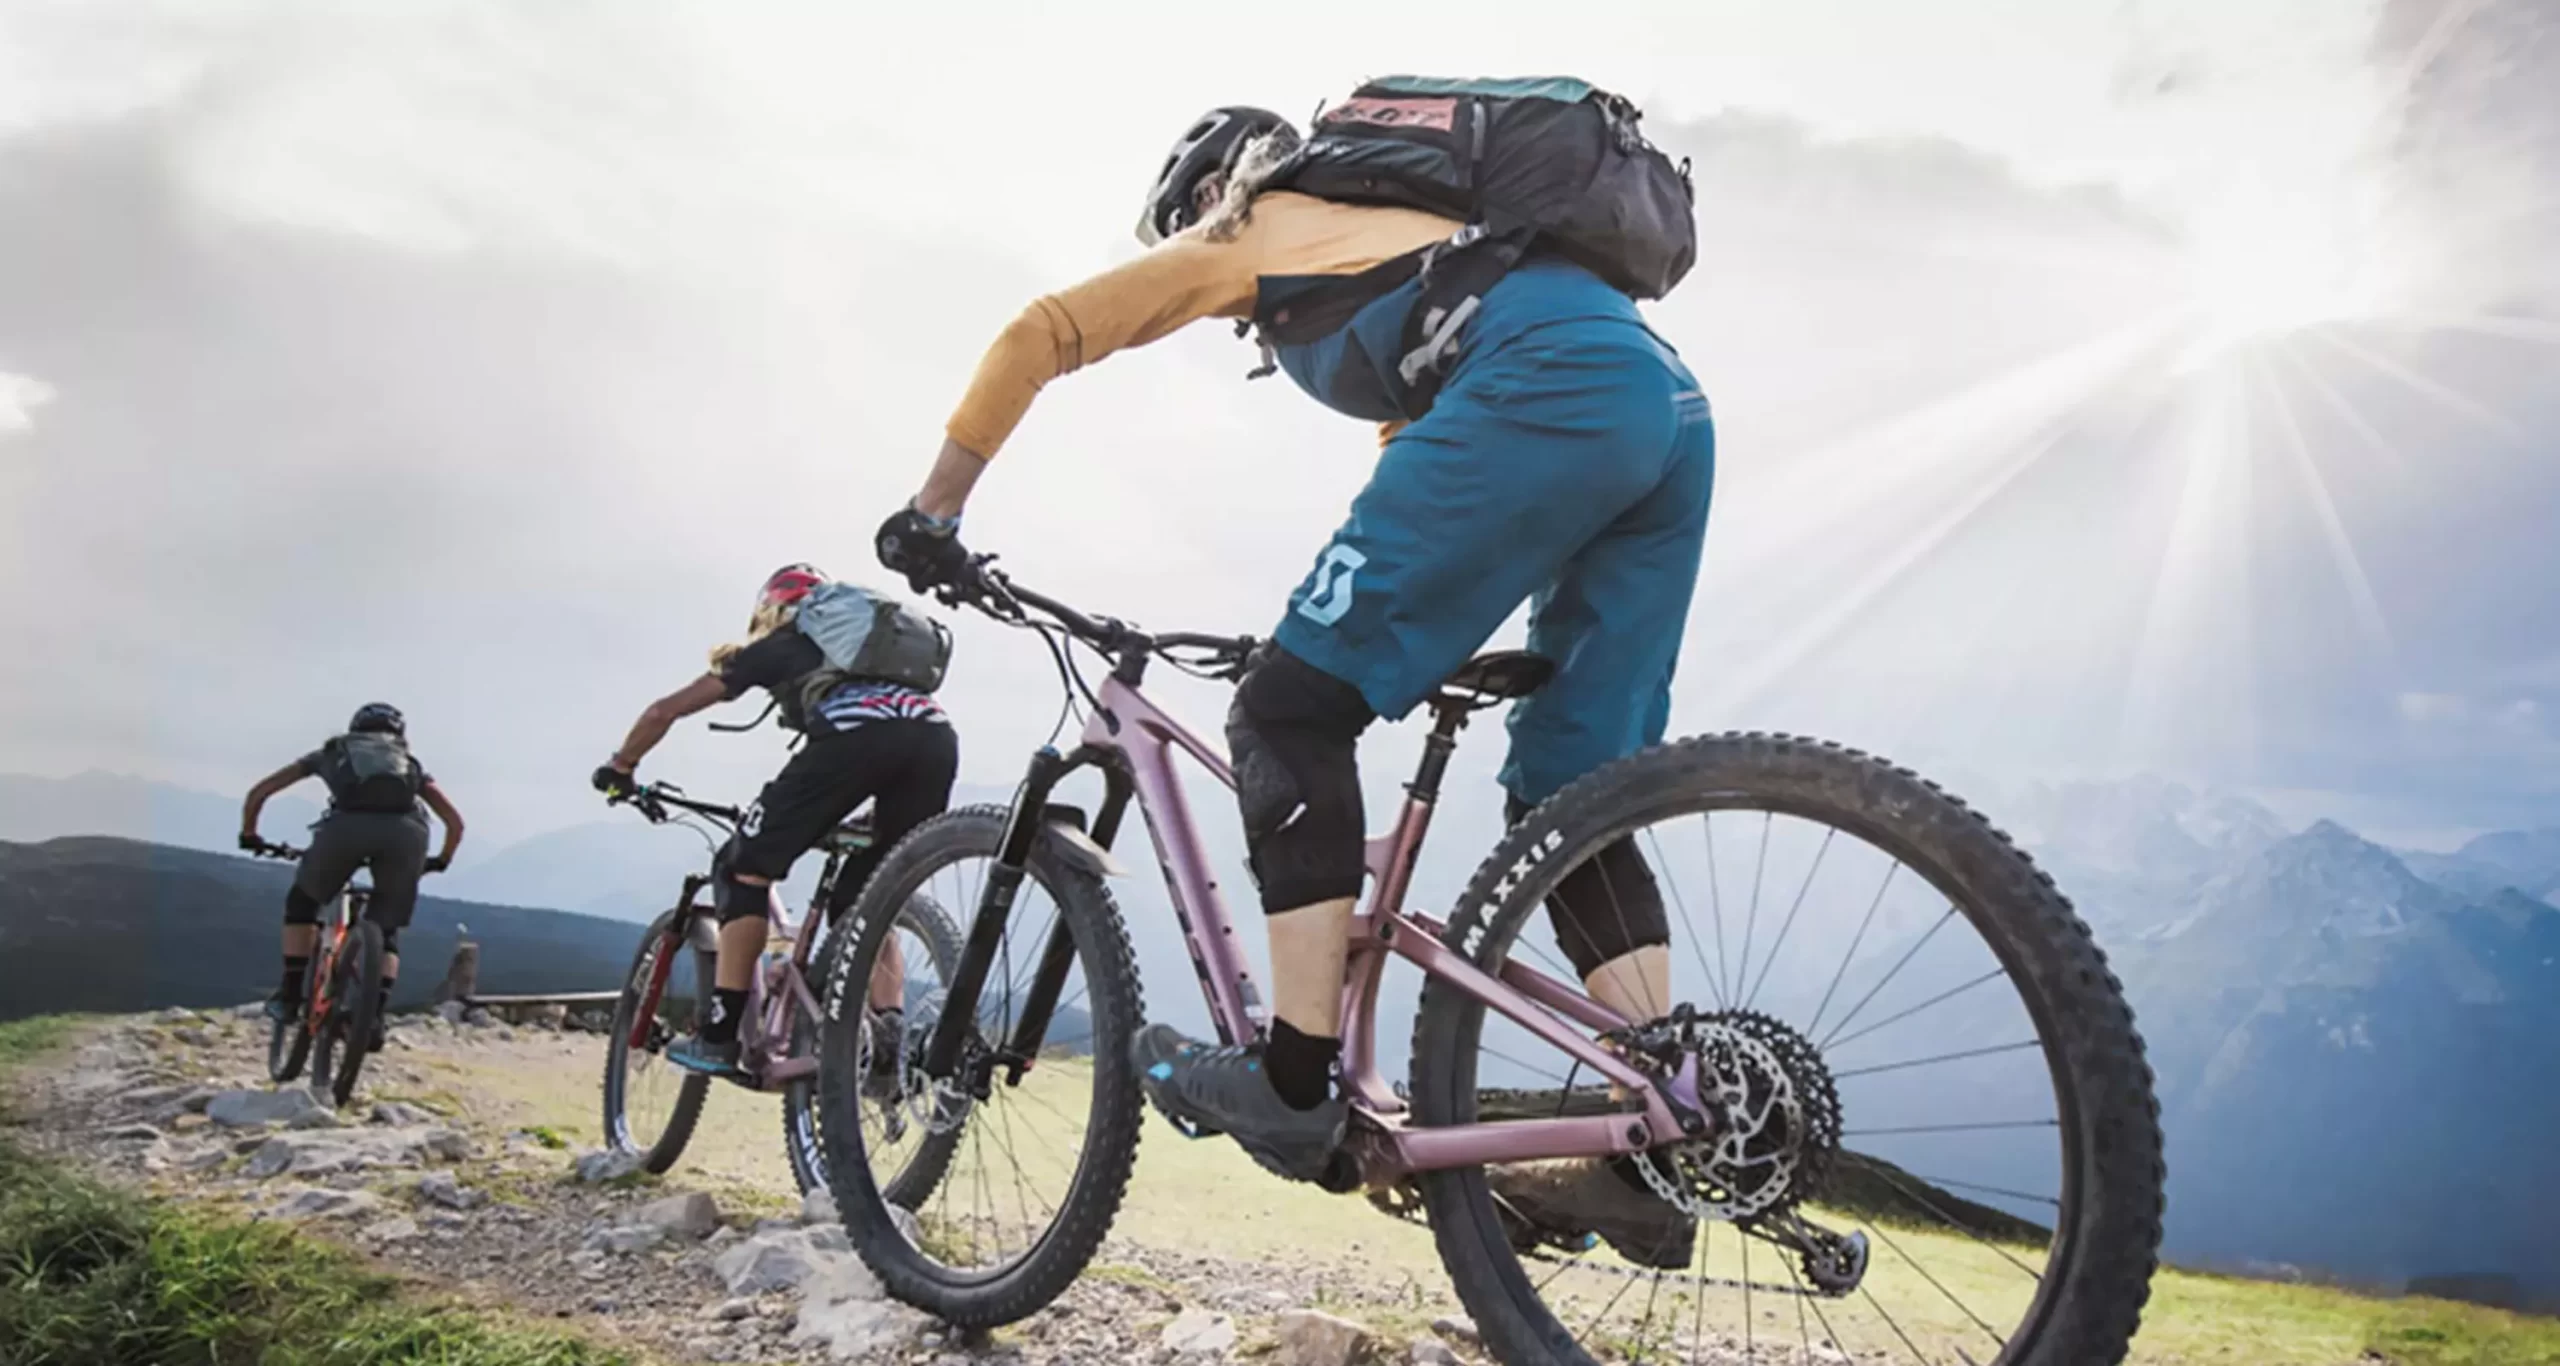 Scopri di più sull'articolo Dolomiti Paganella bike opening 2022